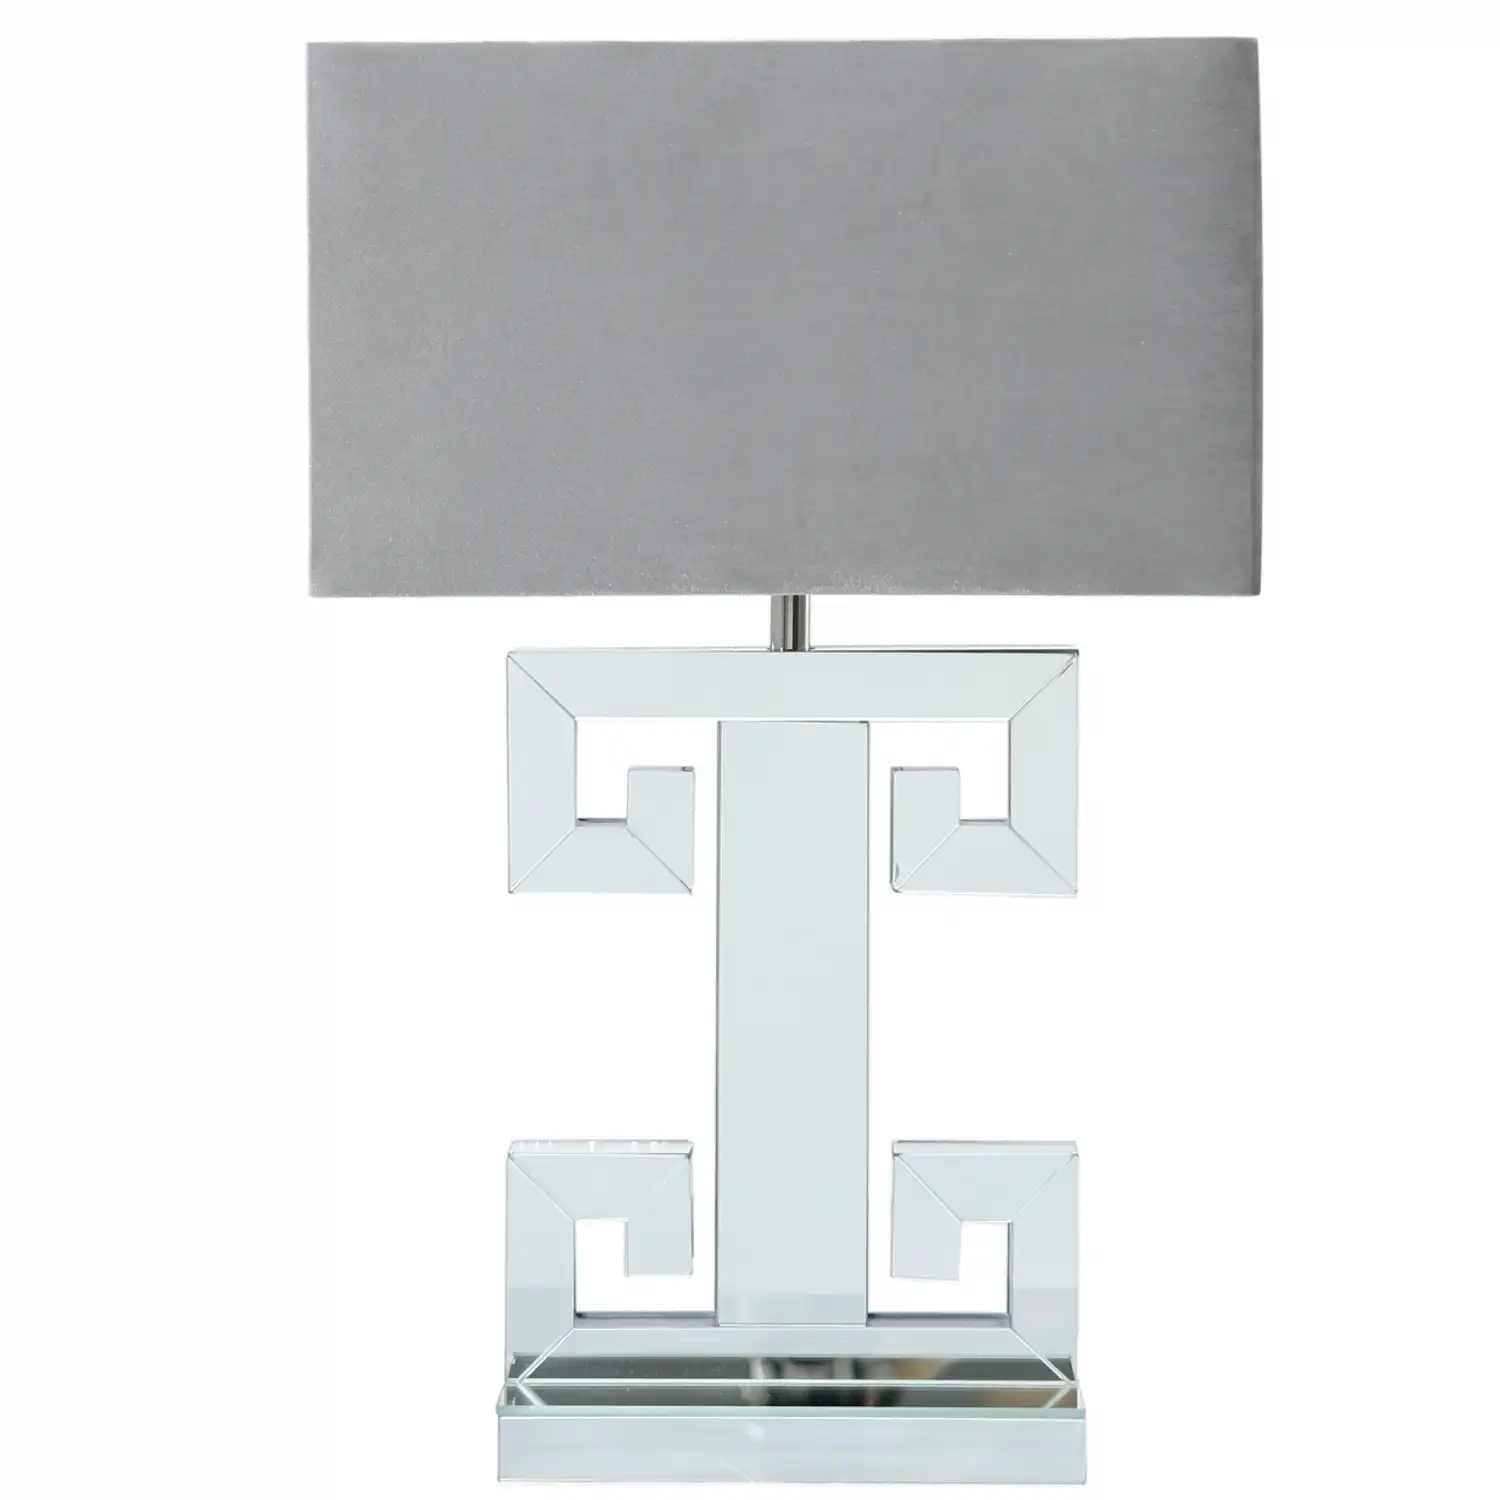 Table Lamp Grey Shade